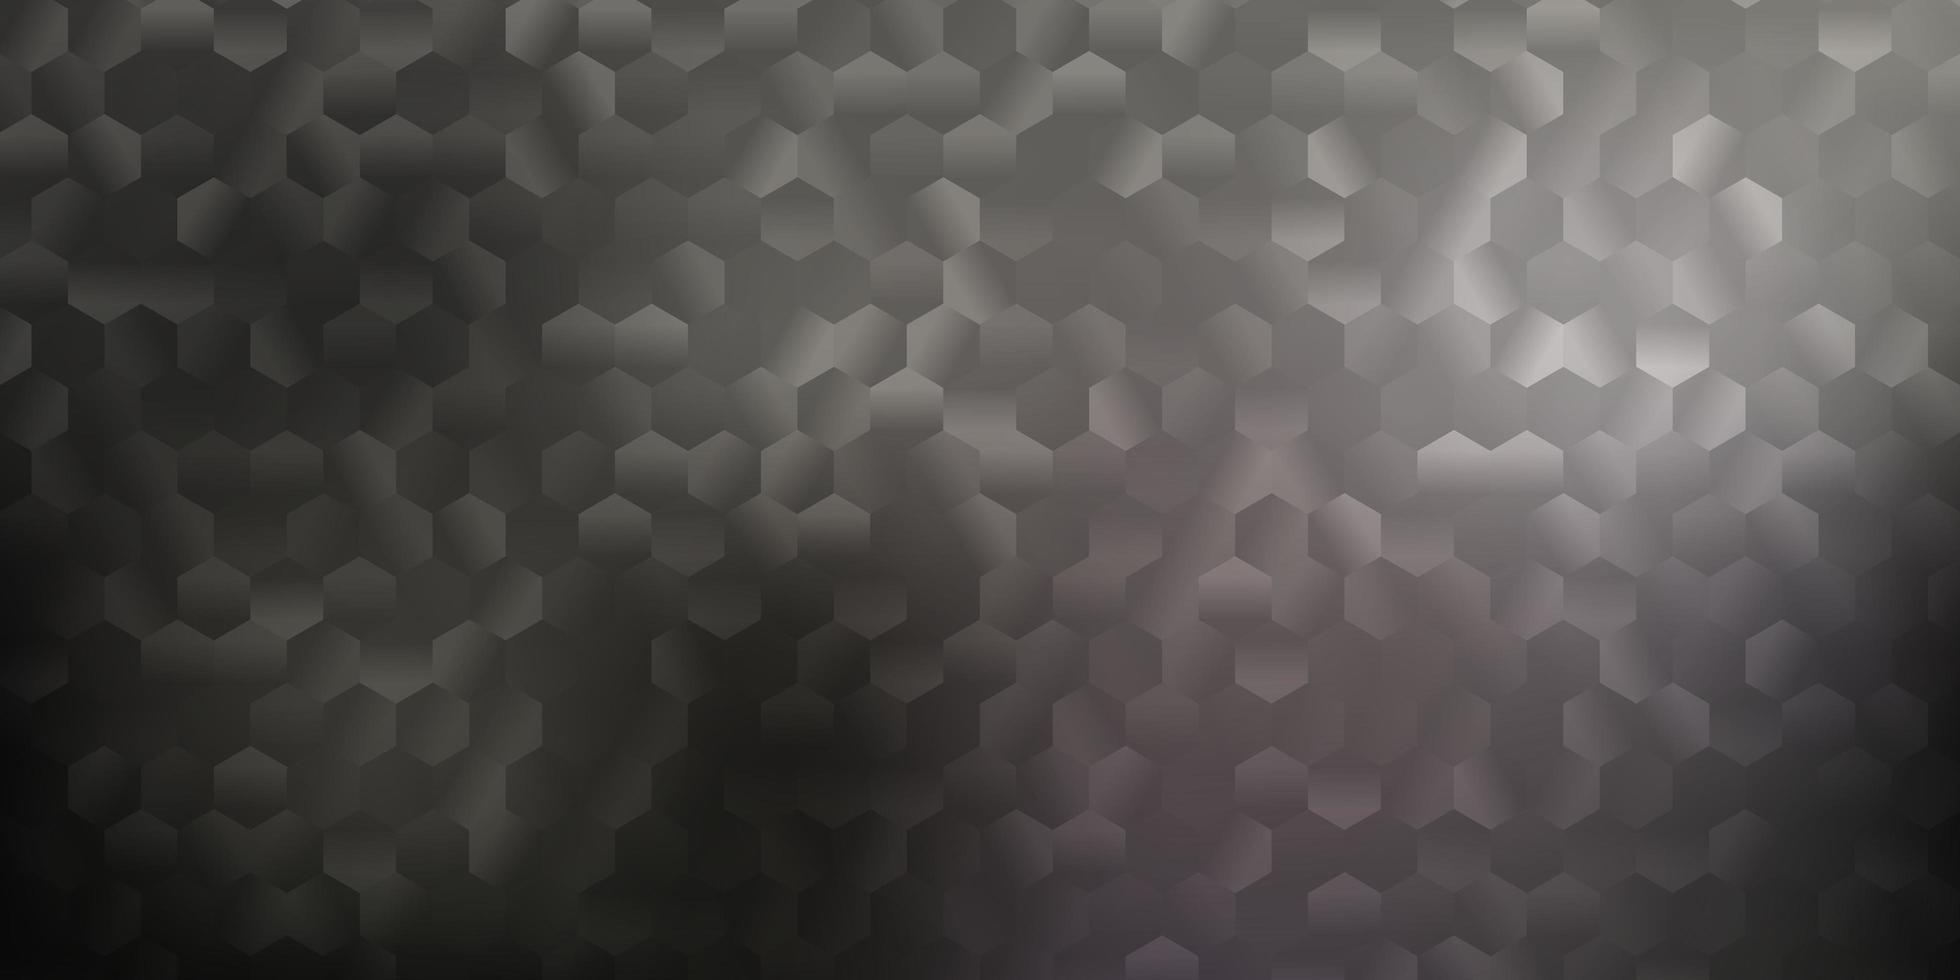 diseño de vector gris claro con formas de hexágonos.